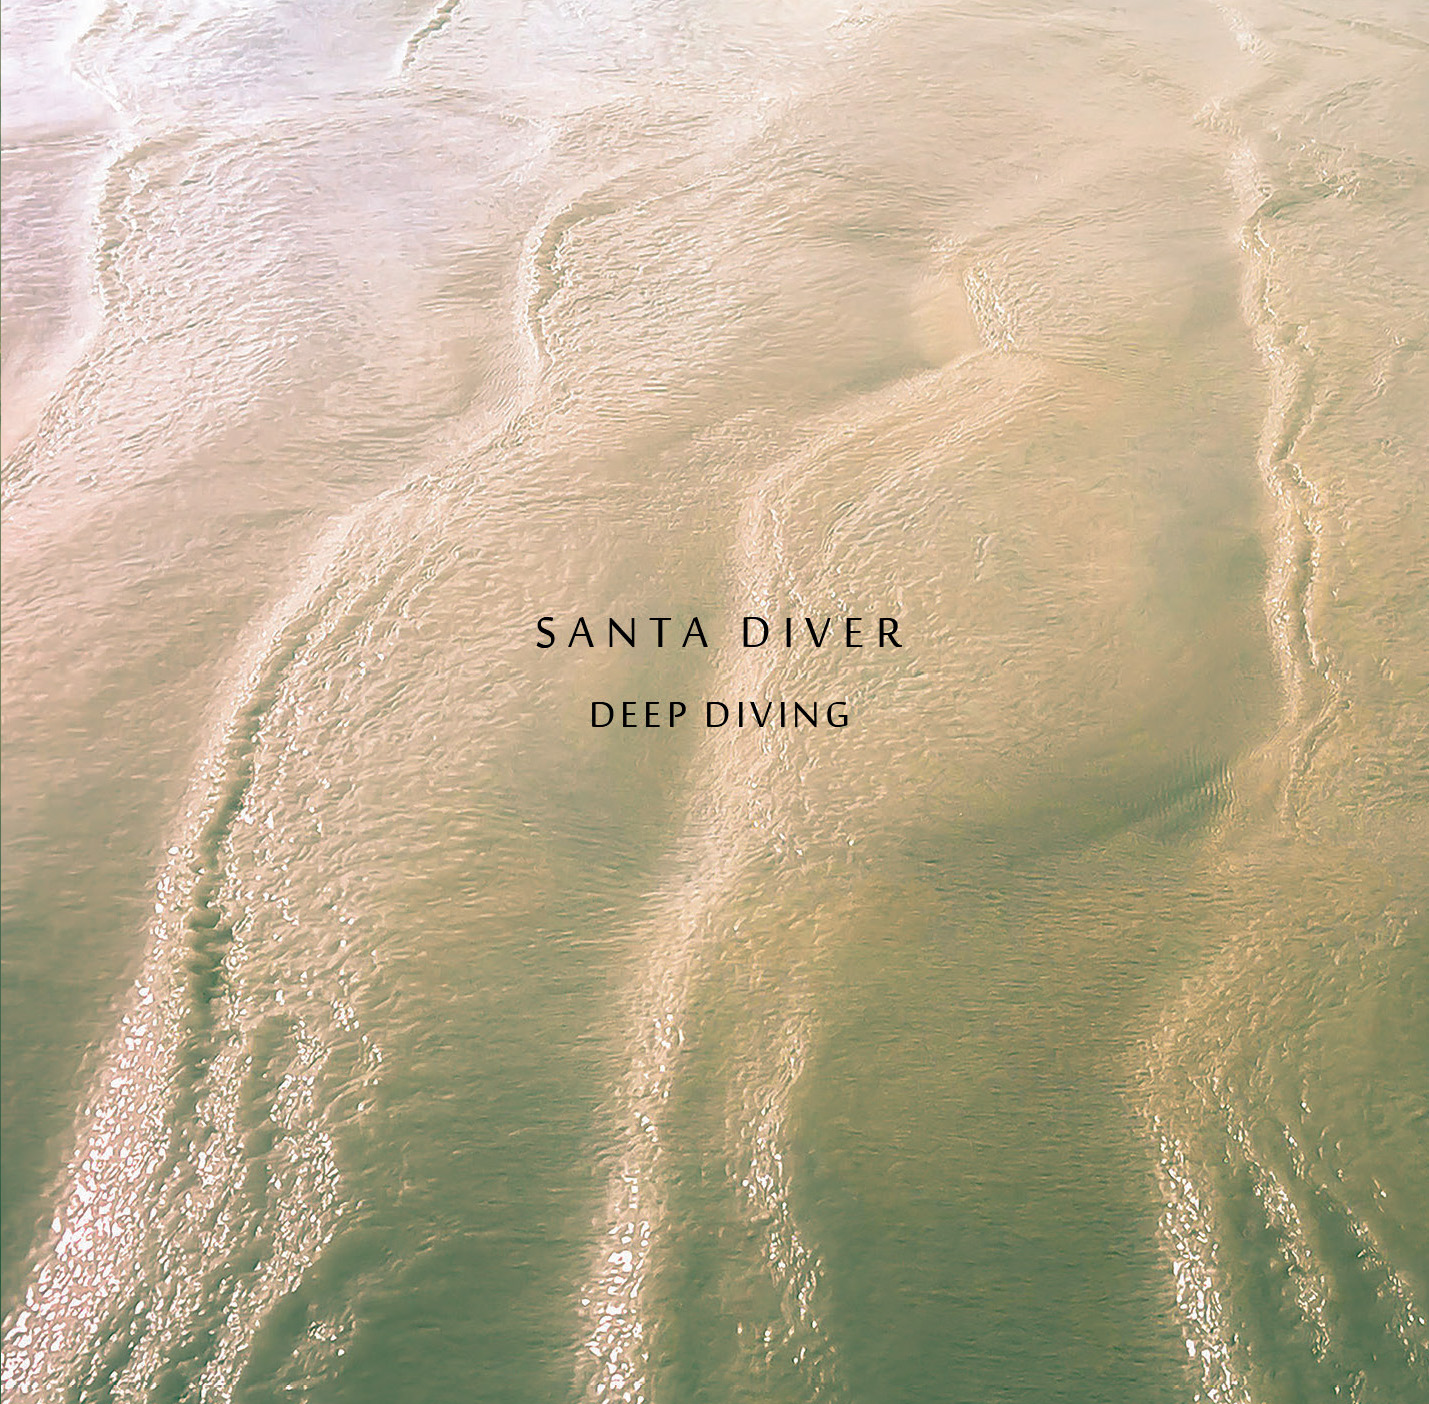 Santa Diver – Deep Diving